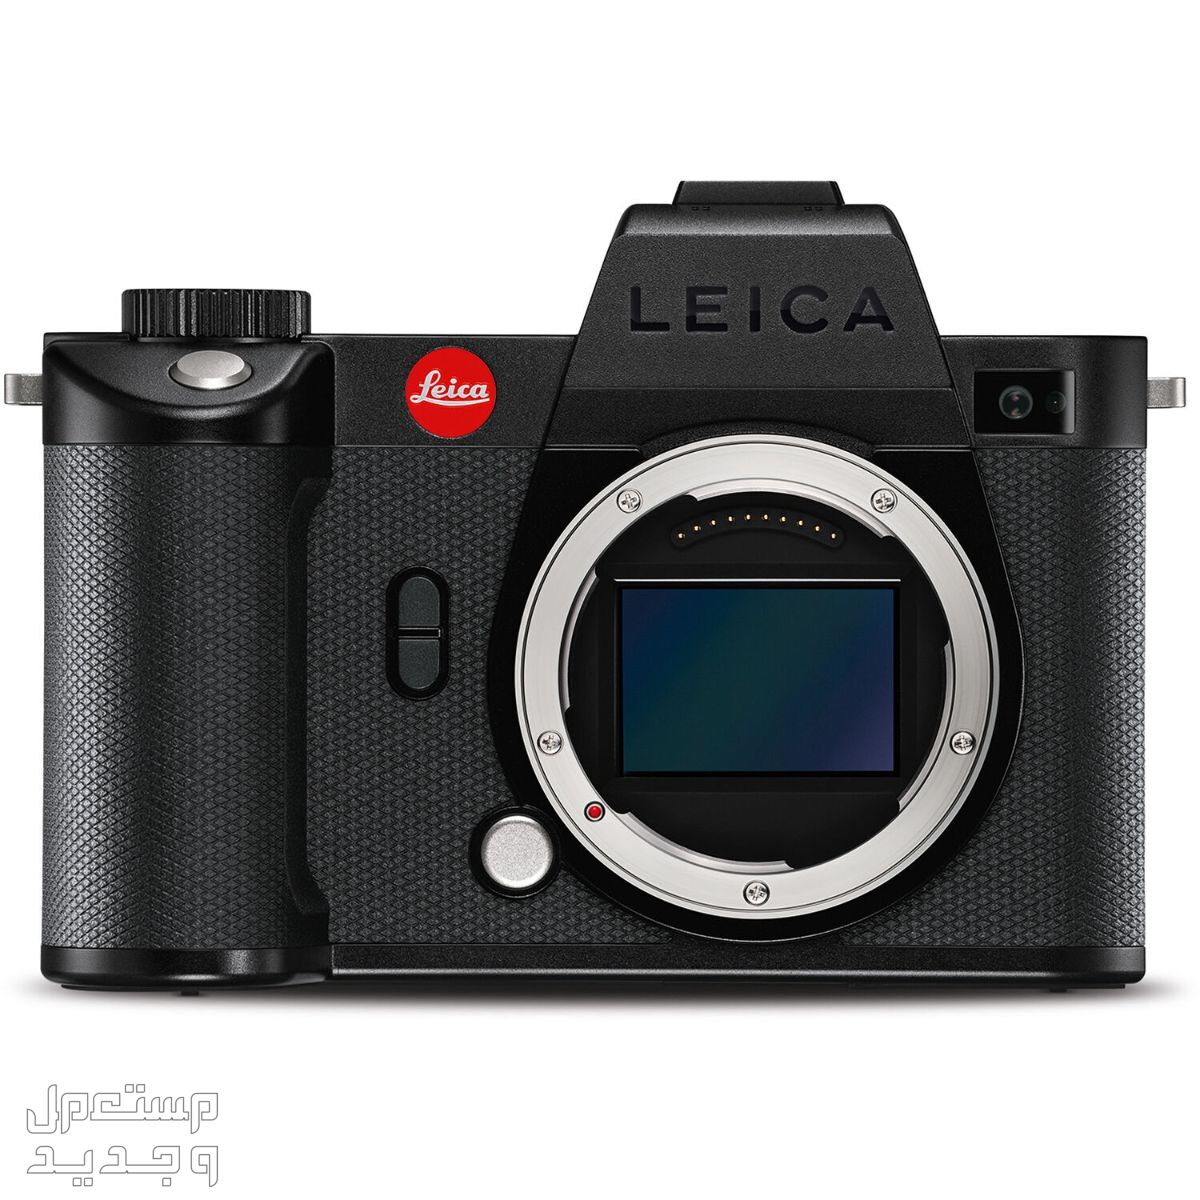 بالصور .. أفضل أنواع الكاميرات ومميزاتها وأسعارها في الإمارات العربية المتحدة كاميرا Leica